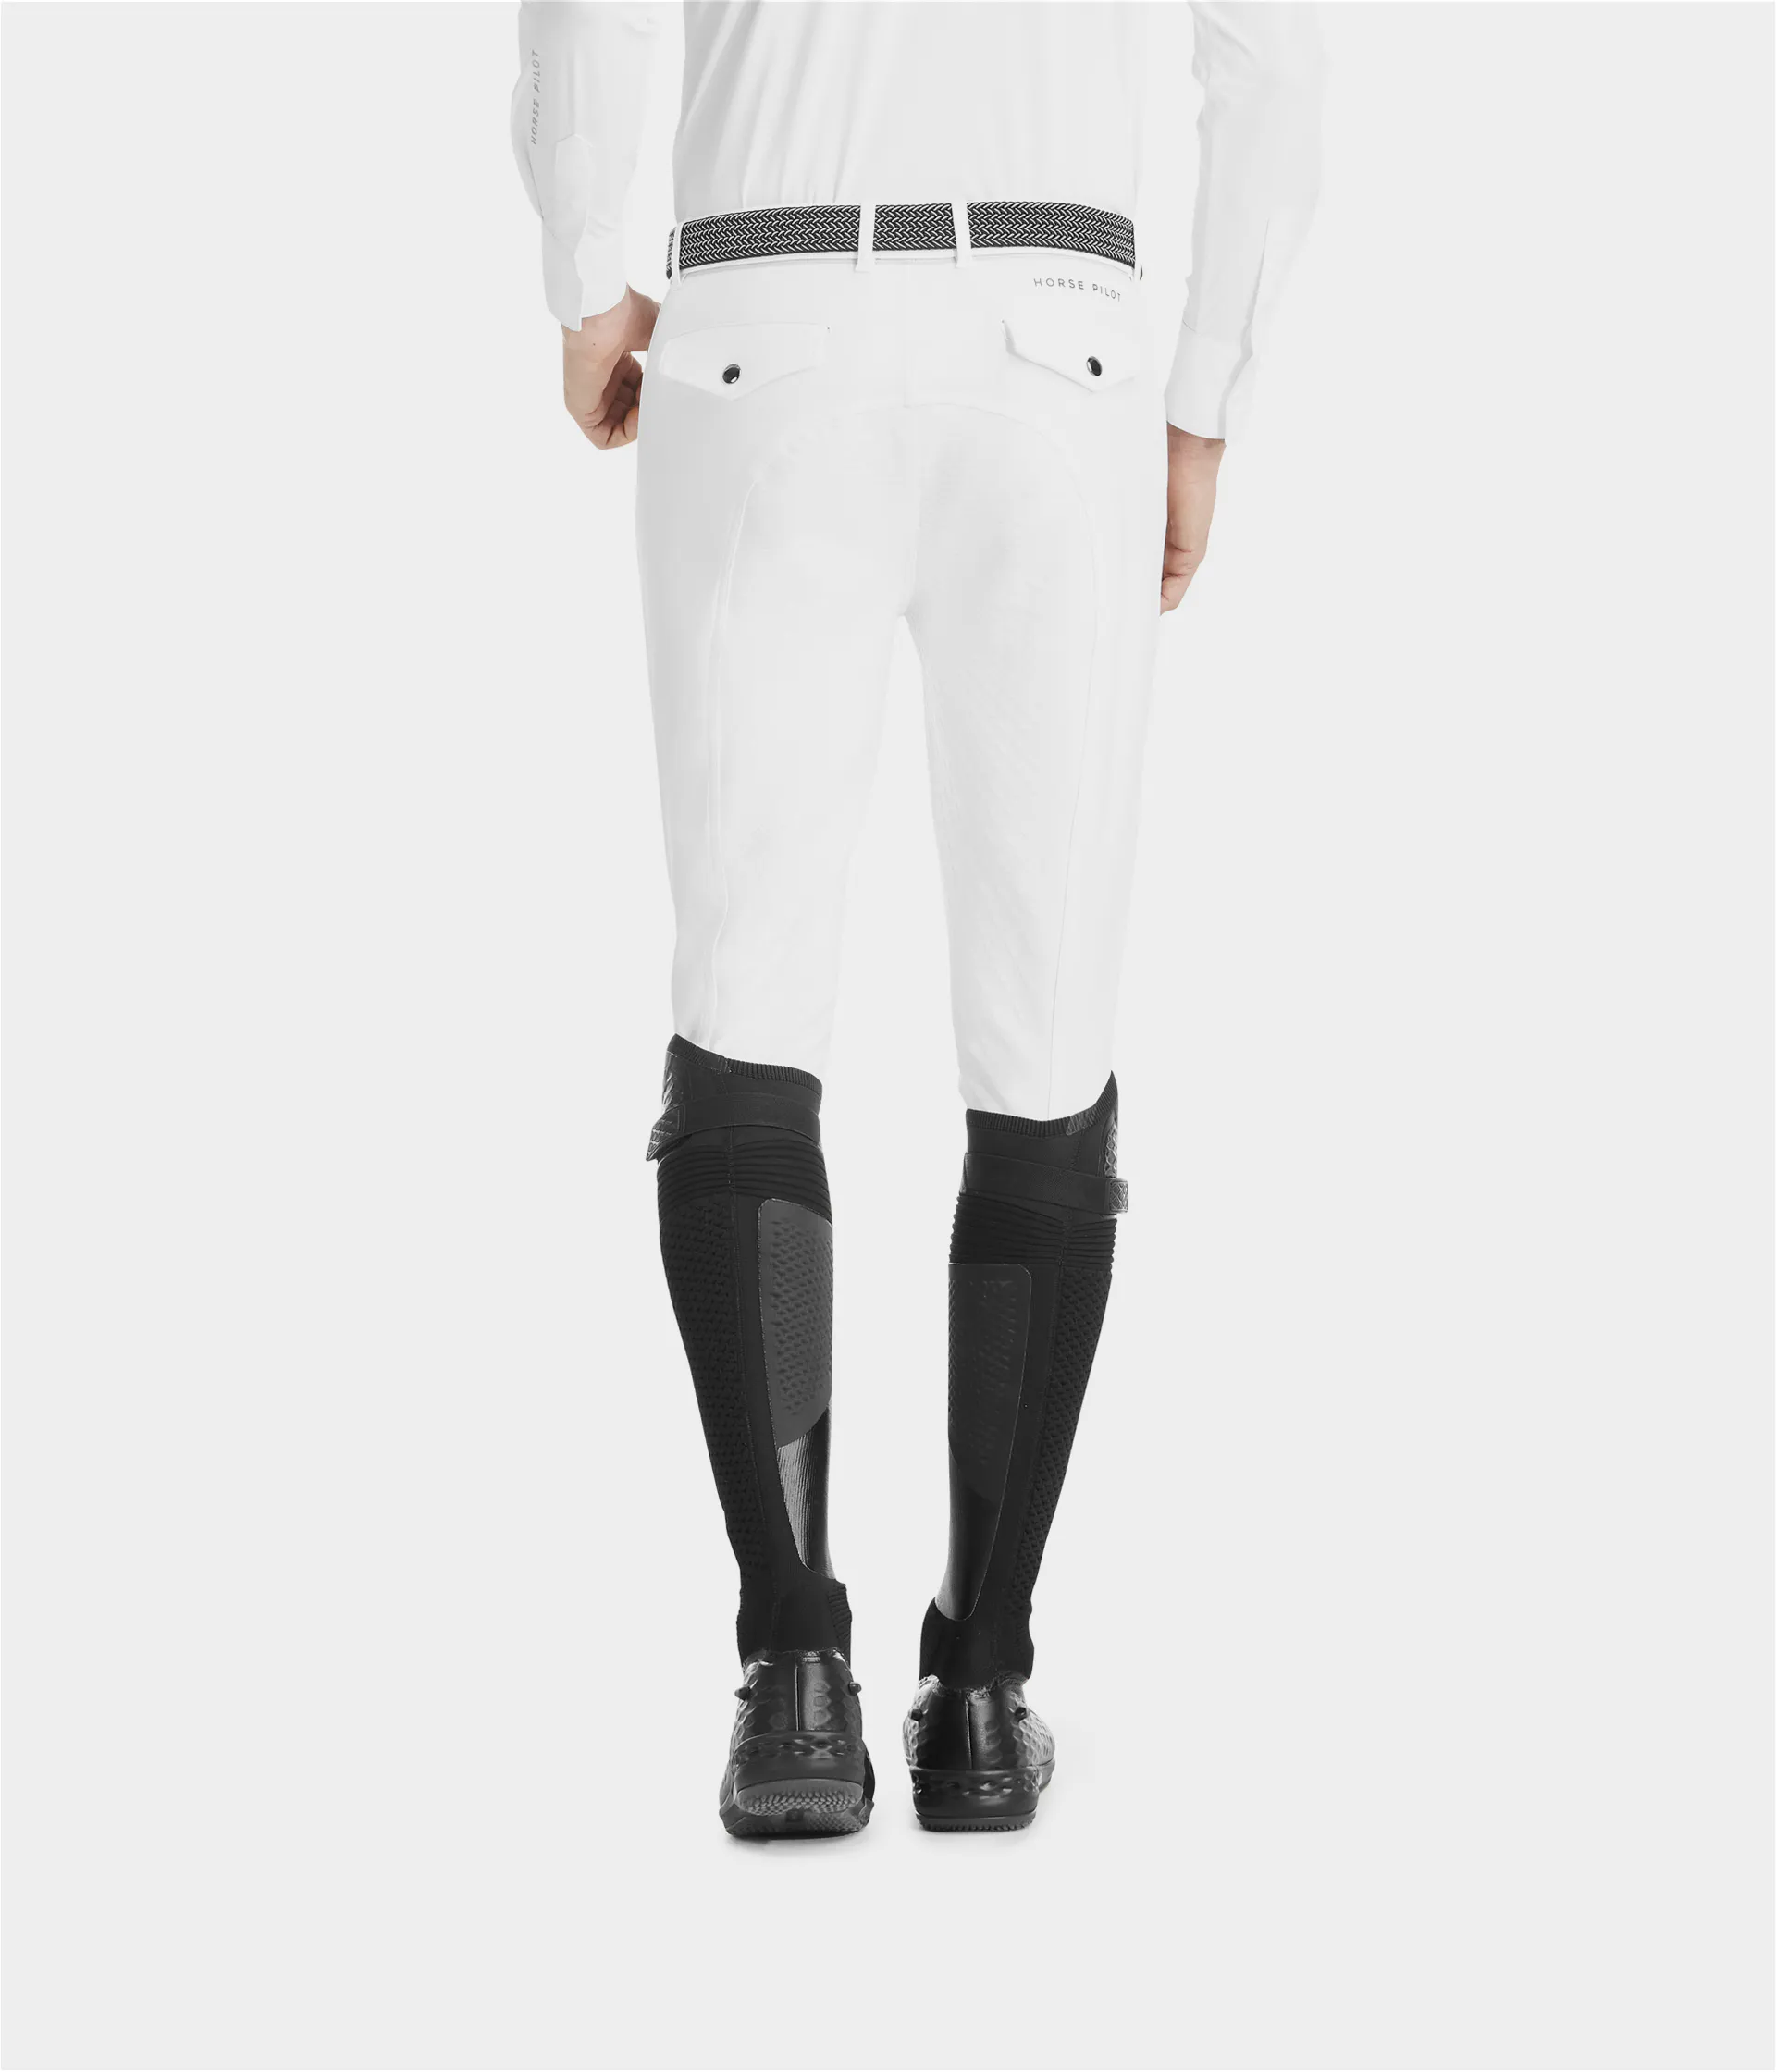 pantalon de concours équitation homme x-dress horse pilot blanc